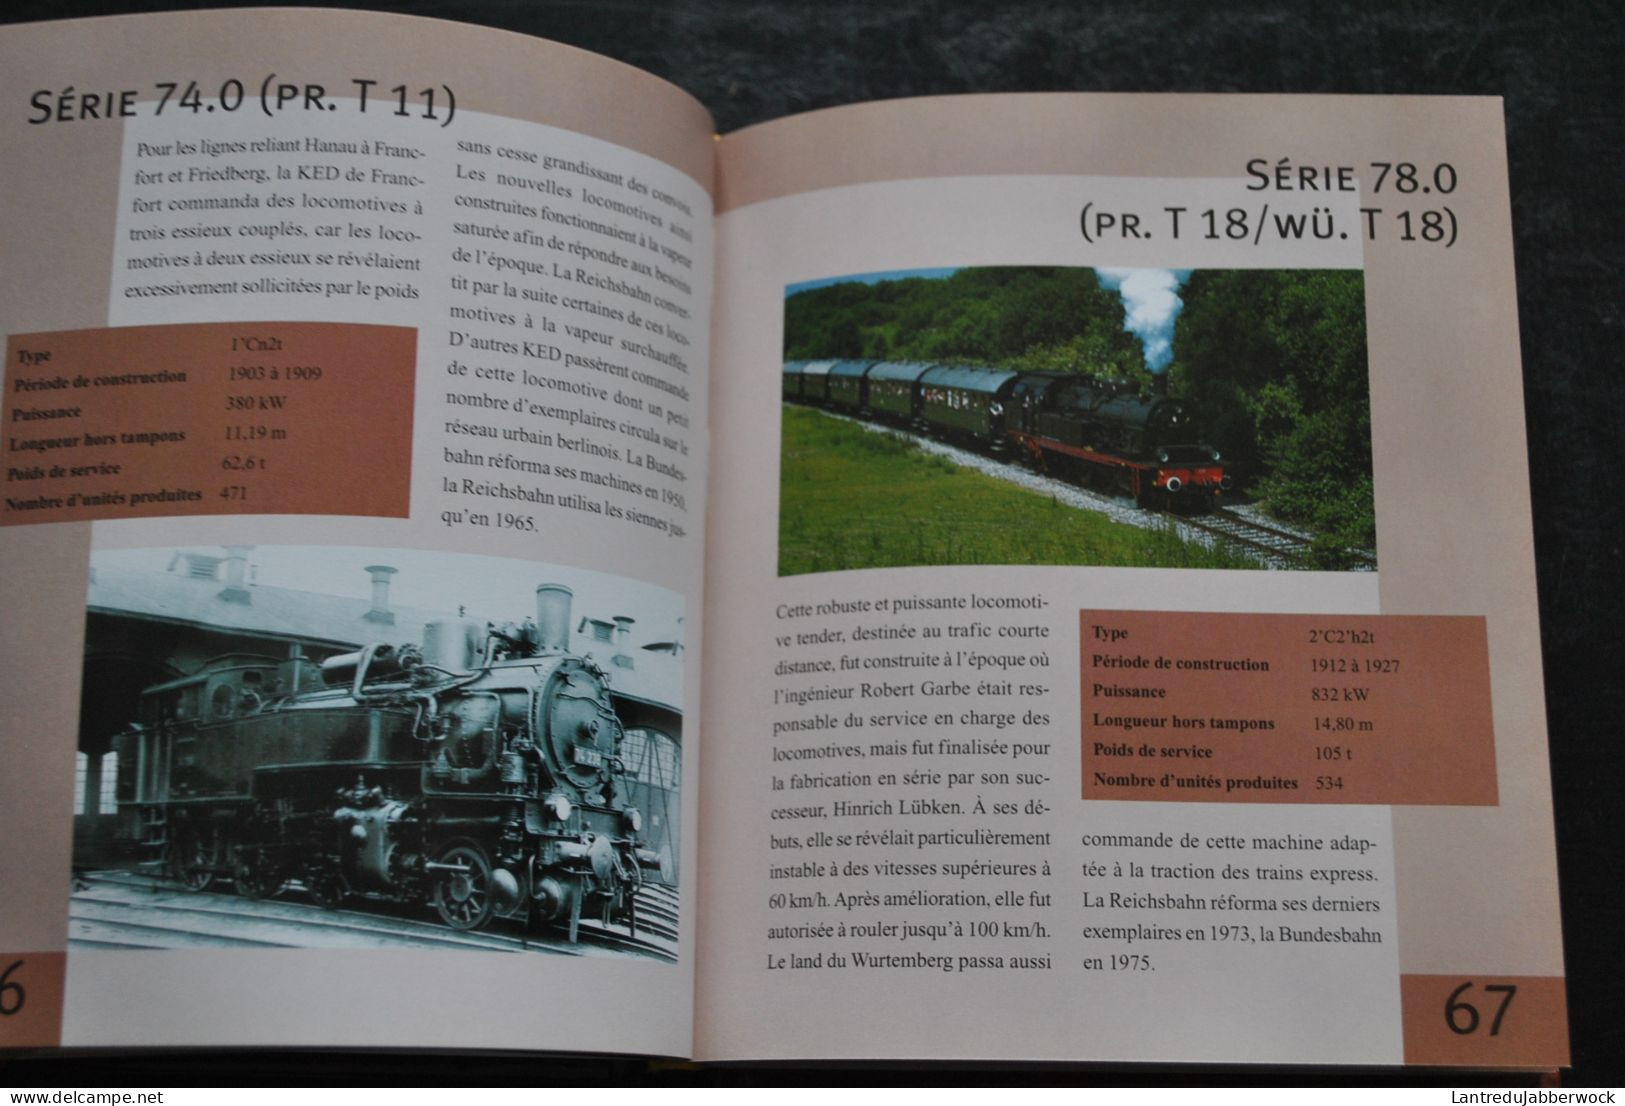 Lexi Guide des locomotives ELCY 2007 Chemins de fer train michelines vapeur tram tramways métro automotrice diesels